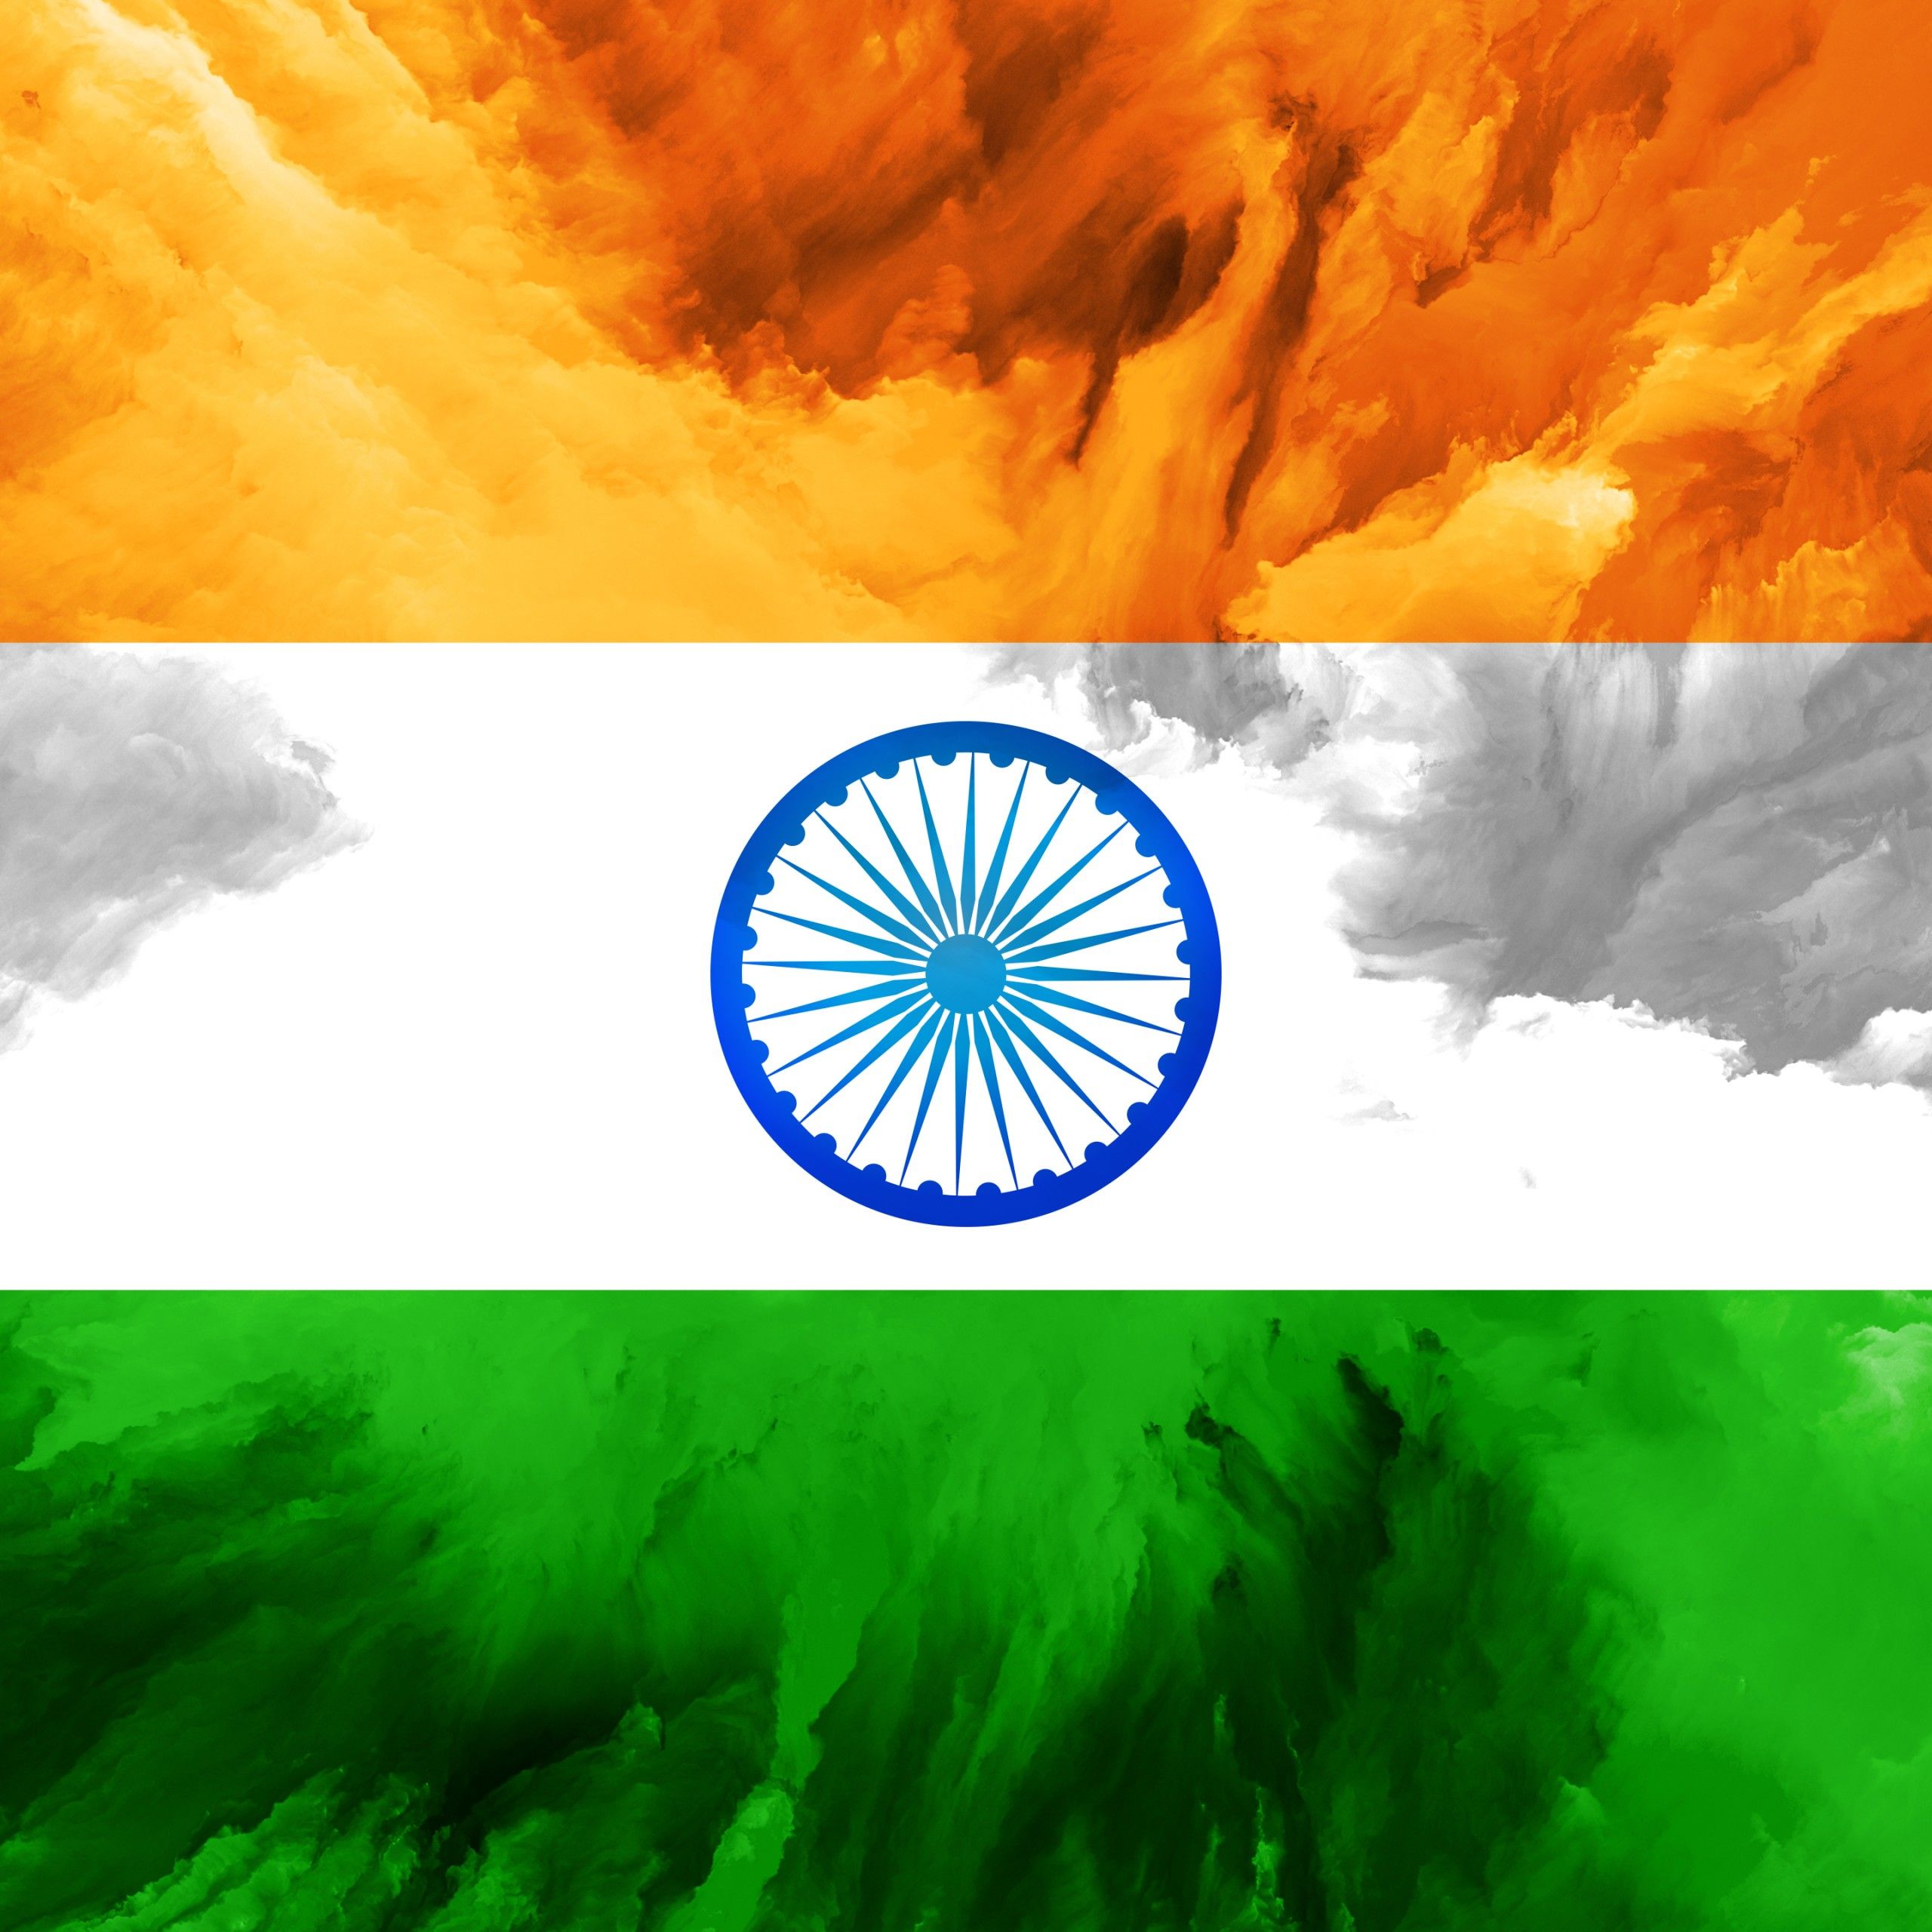 Indian Flag 4K Wallpaper, Tricolour Flag, National Flag, Flag of India, 5K, World